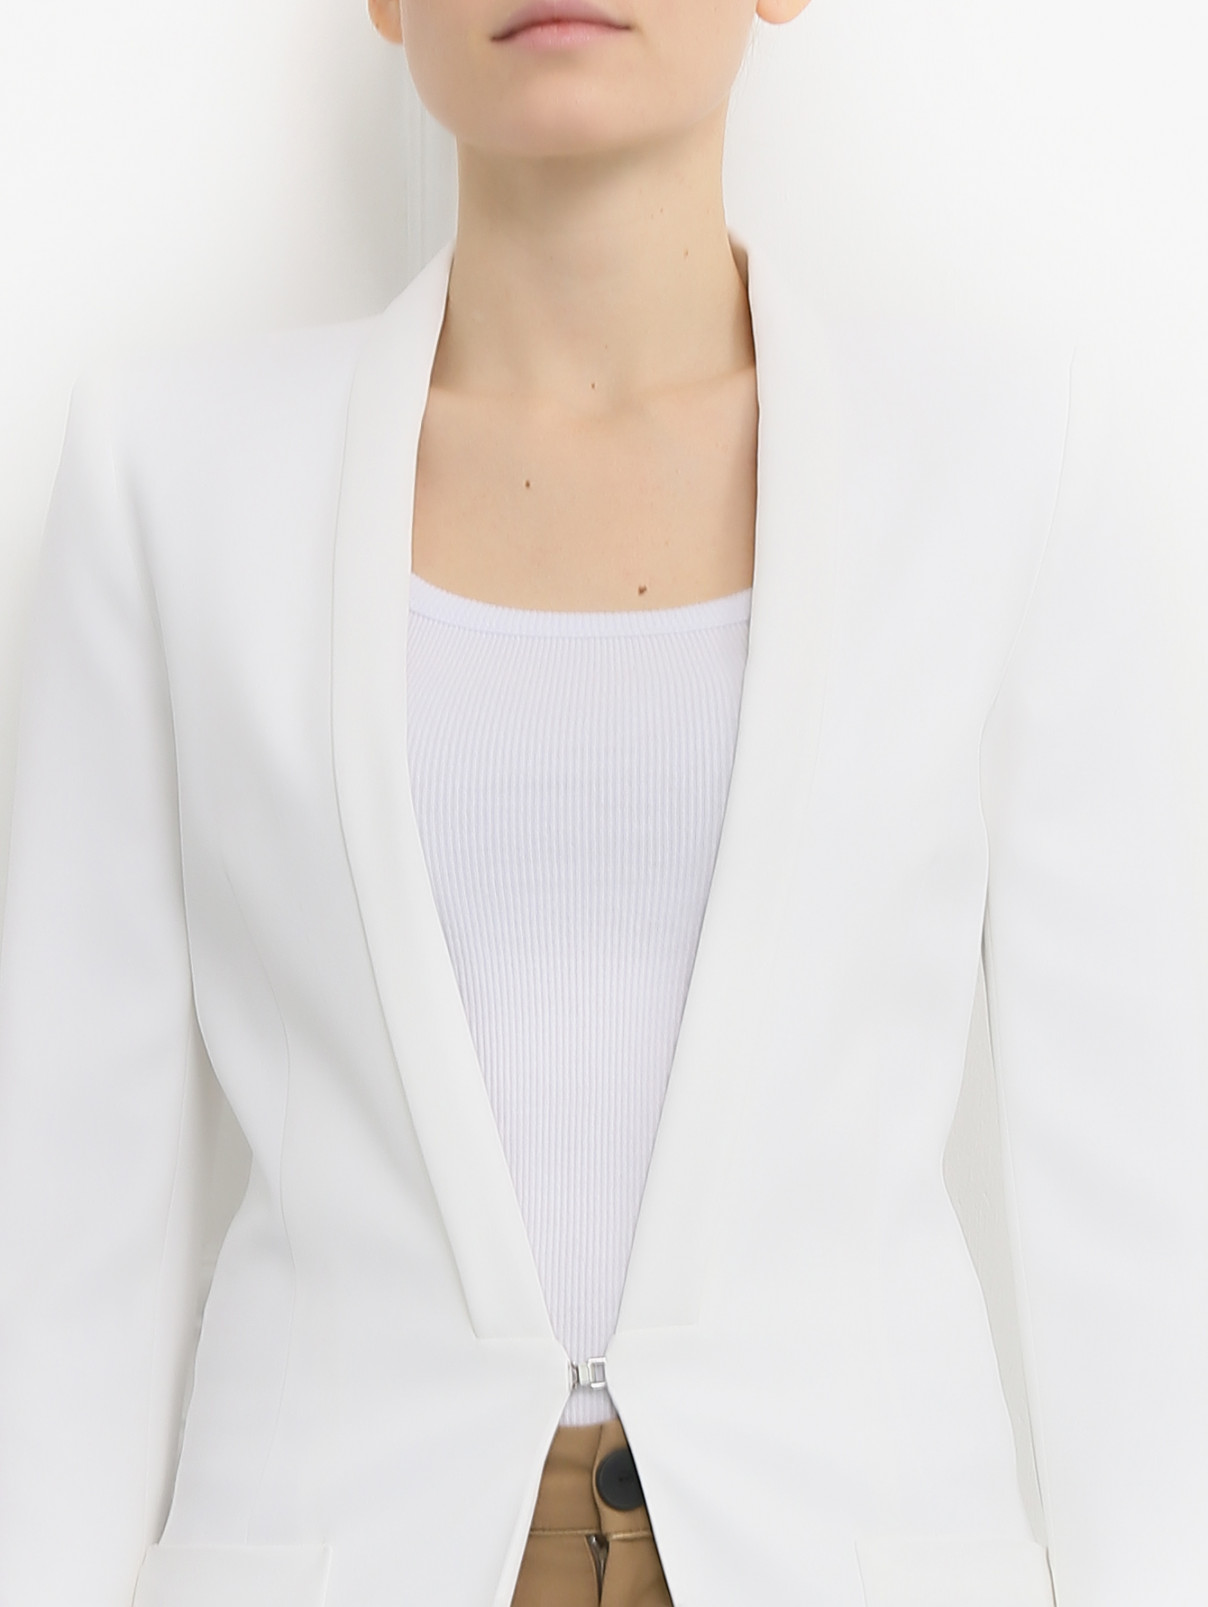 Жакет с накладными карманами Barbara Bui  –  Модель Общий вид  – Цвет:  Белый